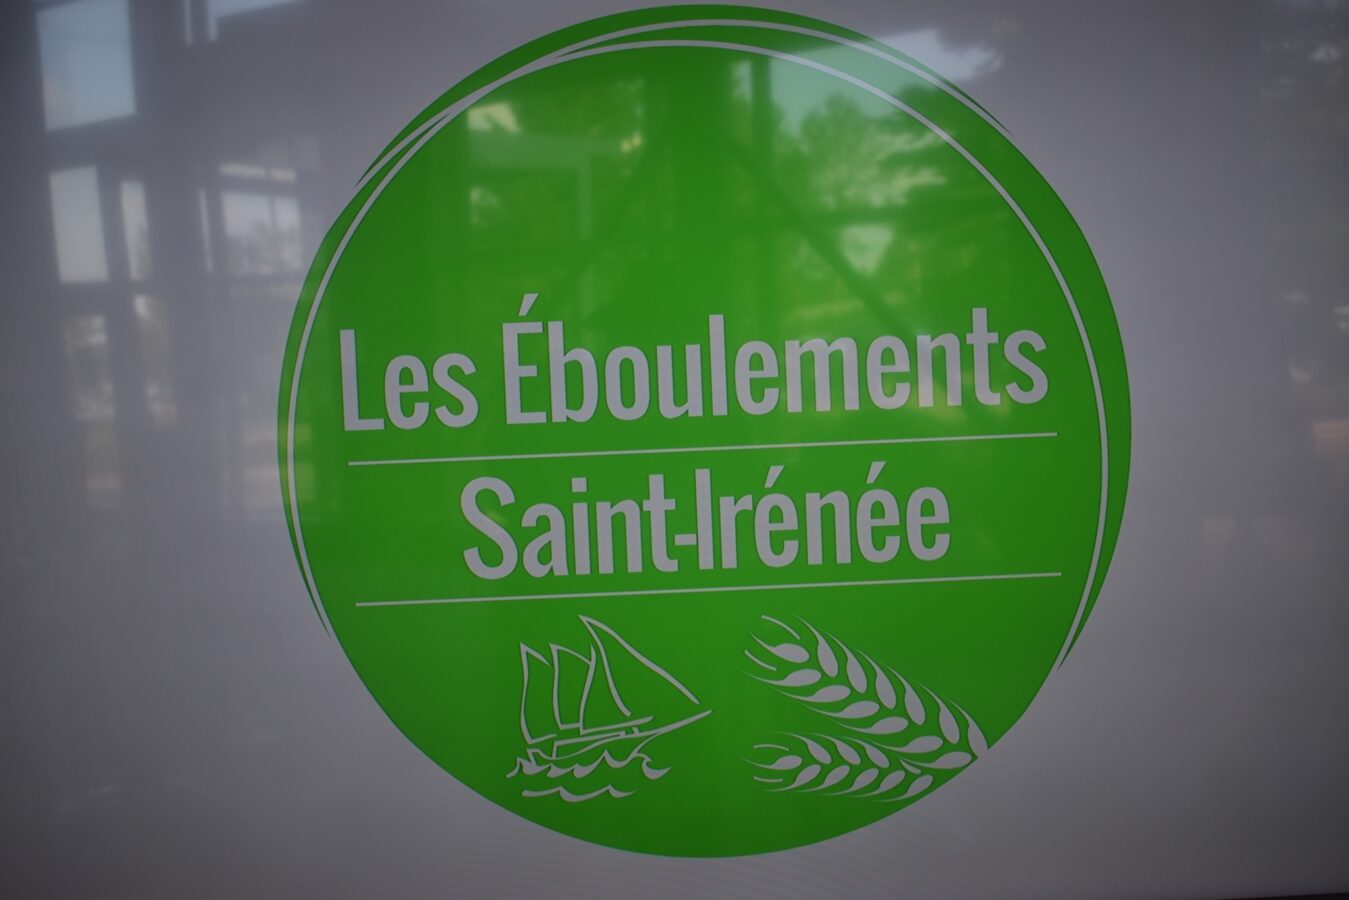 Dévoilement de la nouvelle identité de marque du secteur Les Éboulements–Saint-Irénée et inauguration d’un projet de circuit de haltes